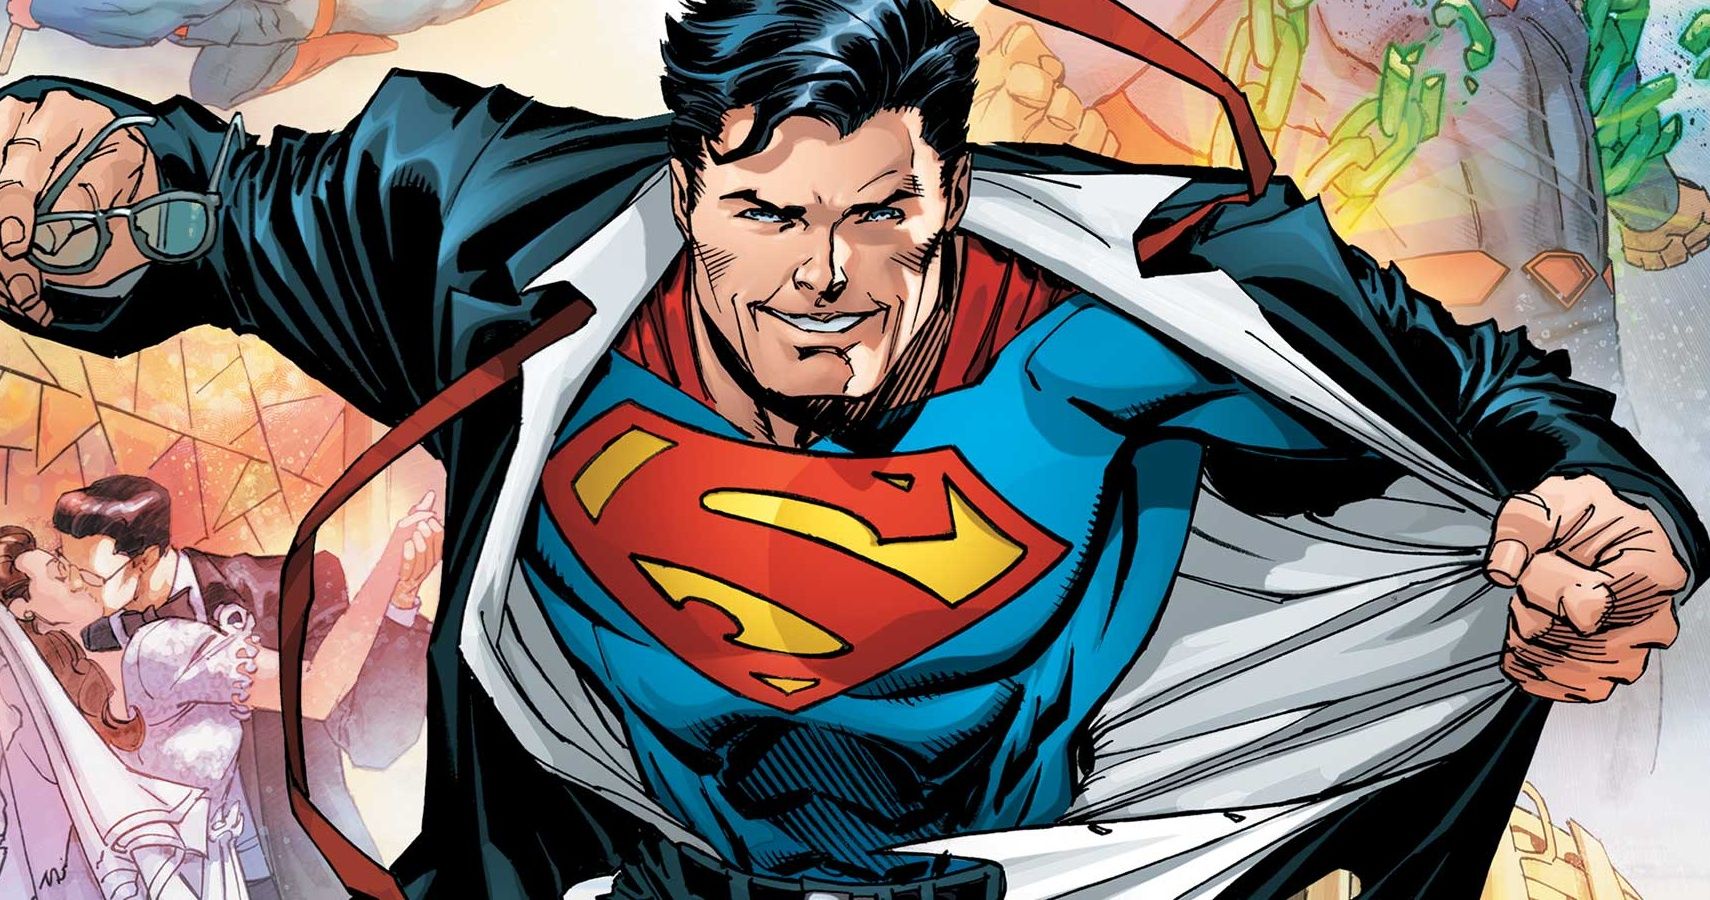 DC Comics: Every Decade Of Superman Comics, Ranked